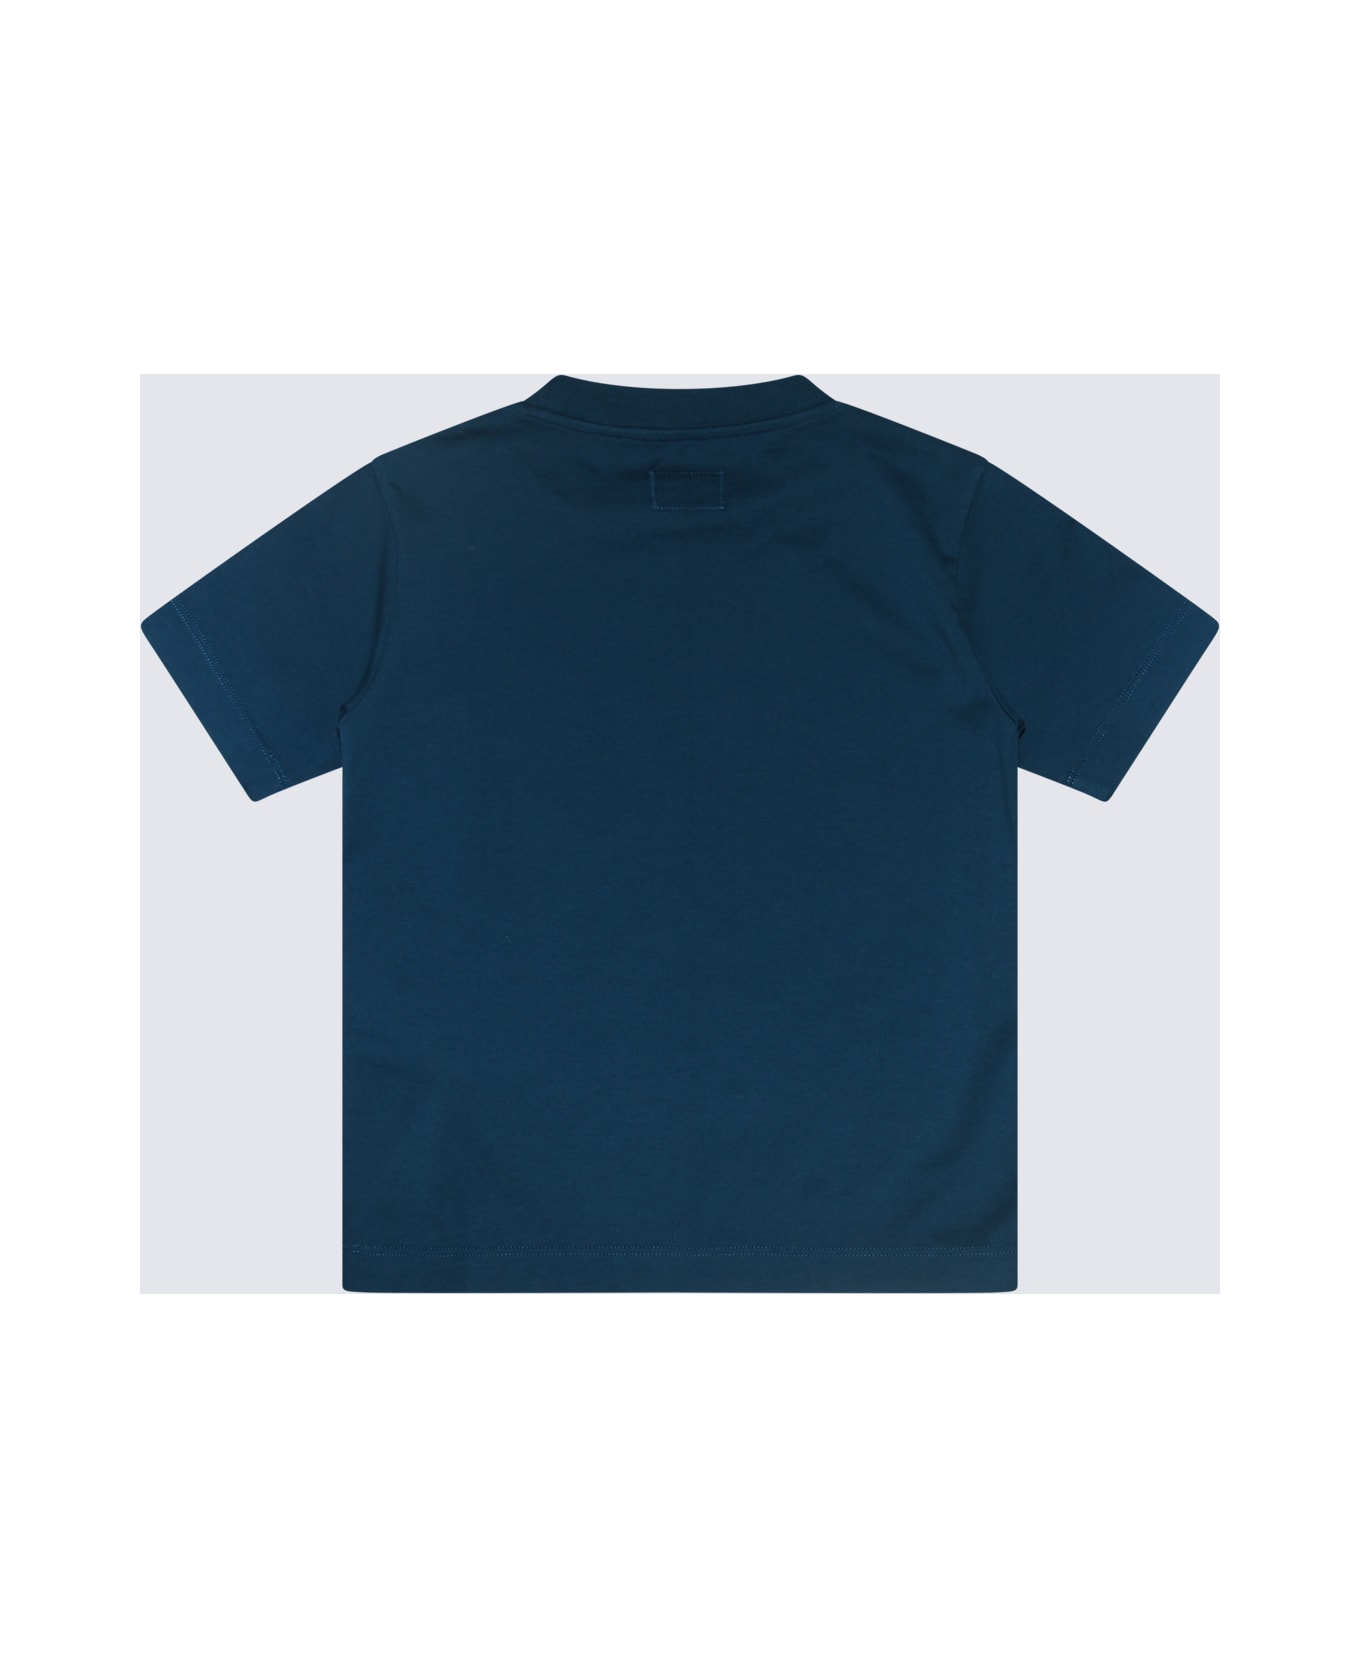 C.P. Company Blue Cotton T-shirt - INK BLUE